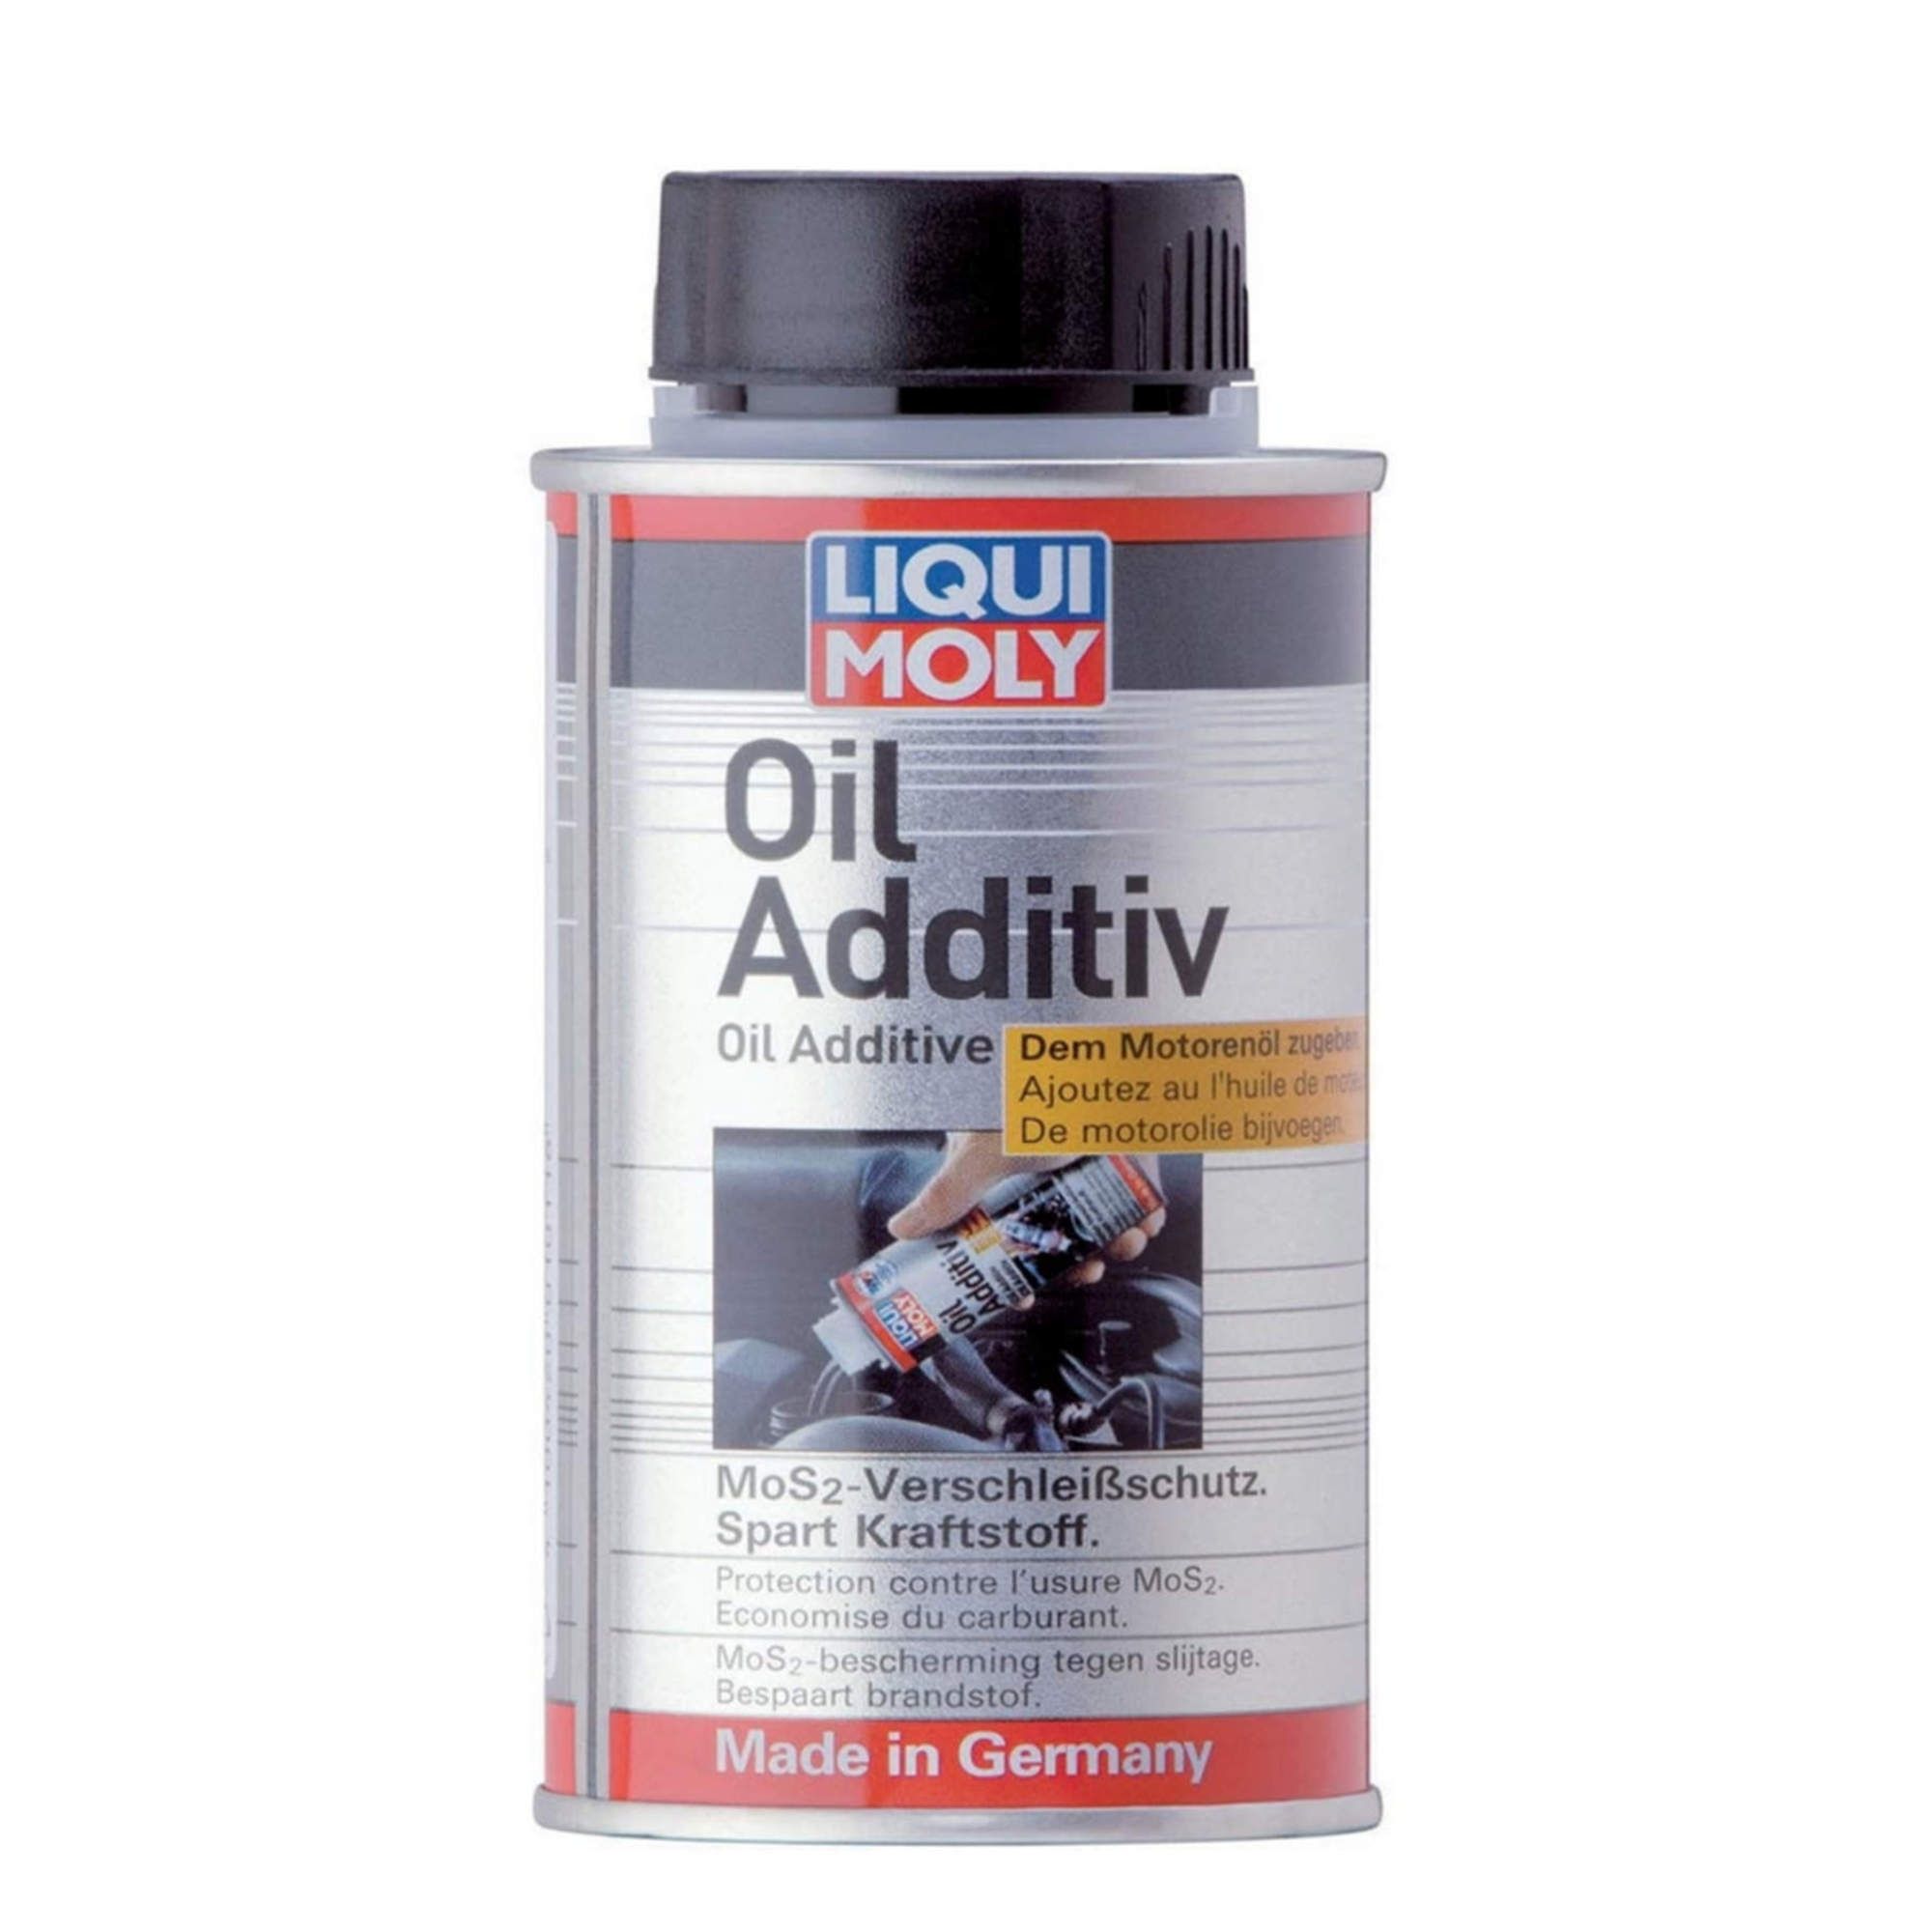 Buy Liqui Moly Oil Additive 125 ml at ATO24 ❗